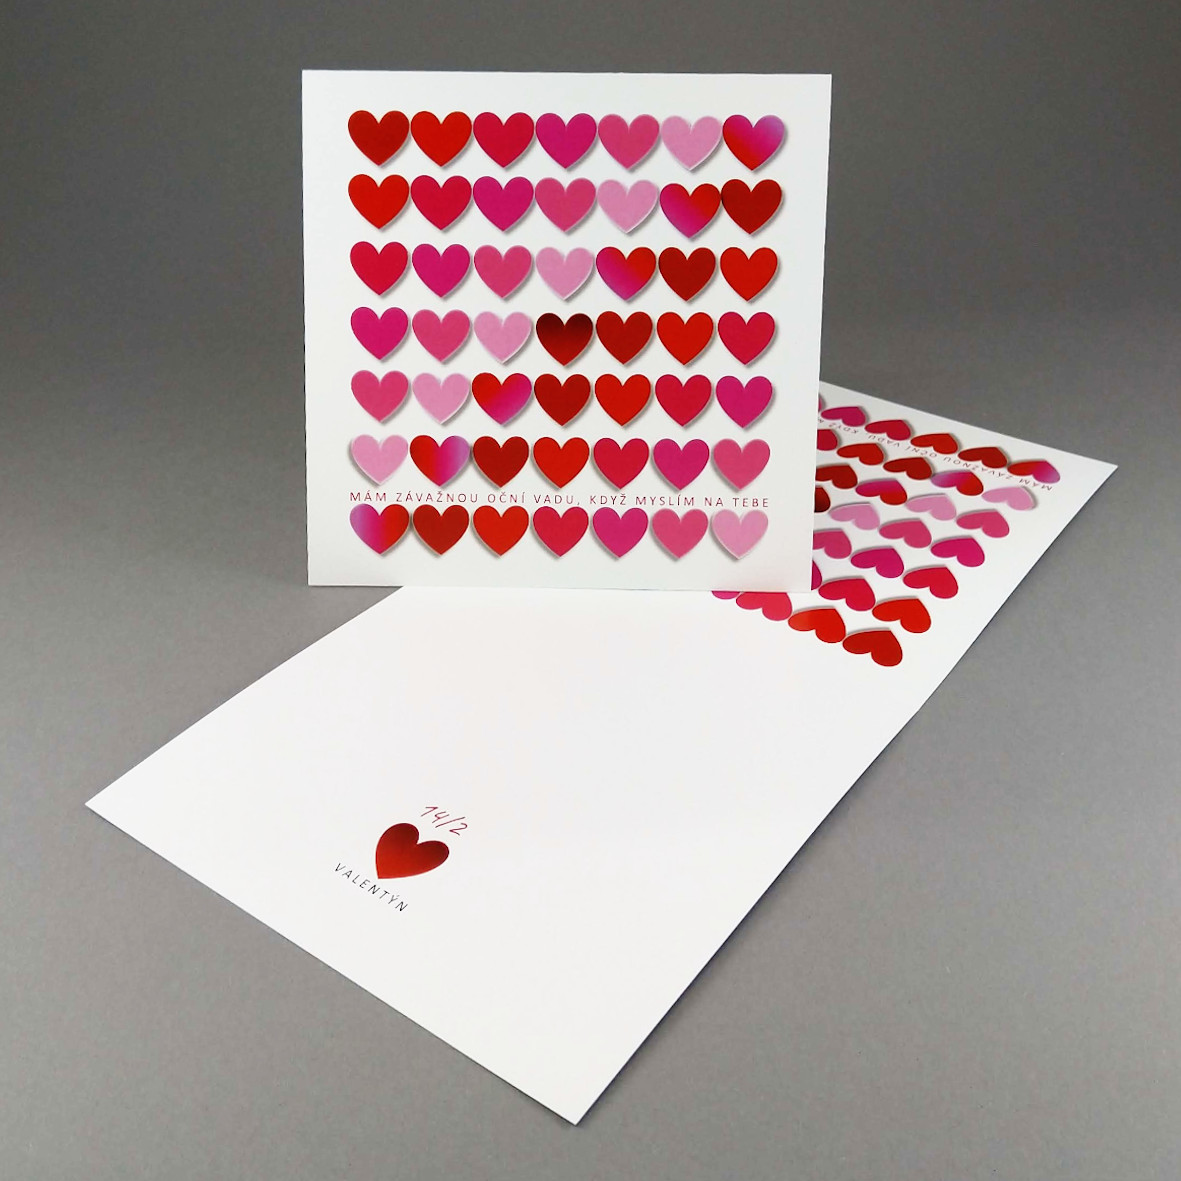 Valentýnka s blokem 7x7 srdcí doplněným textem "mám závažnou oční vadu, když myslím na tebe".